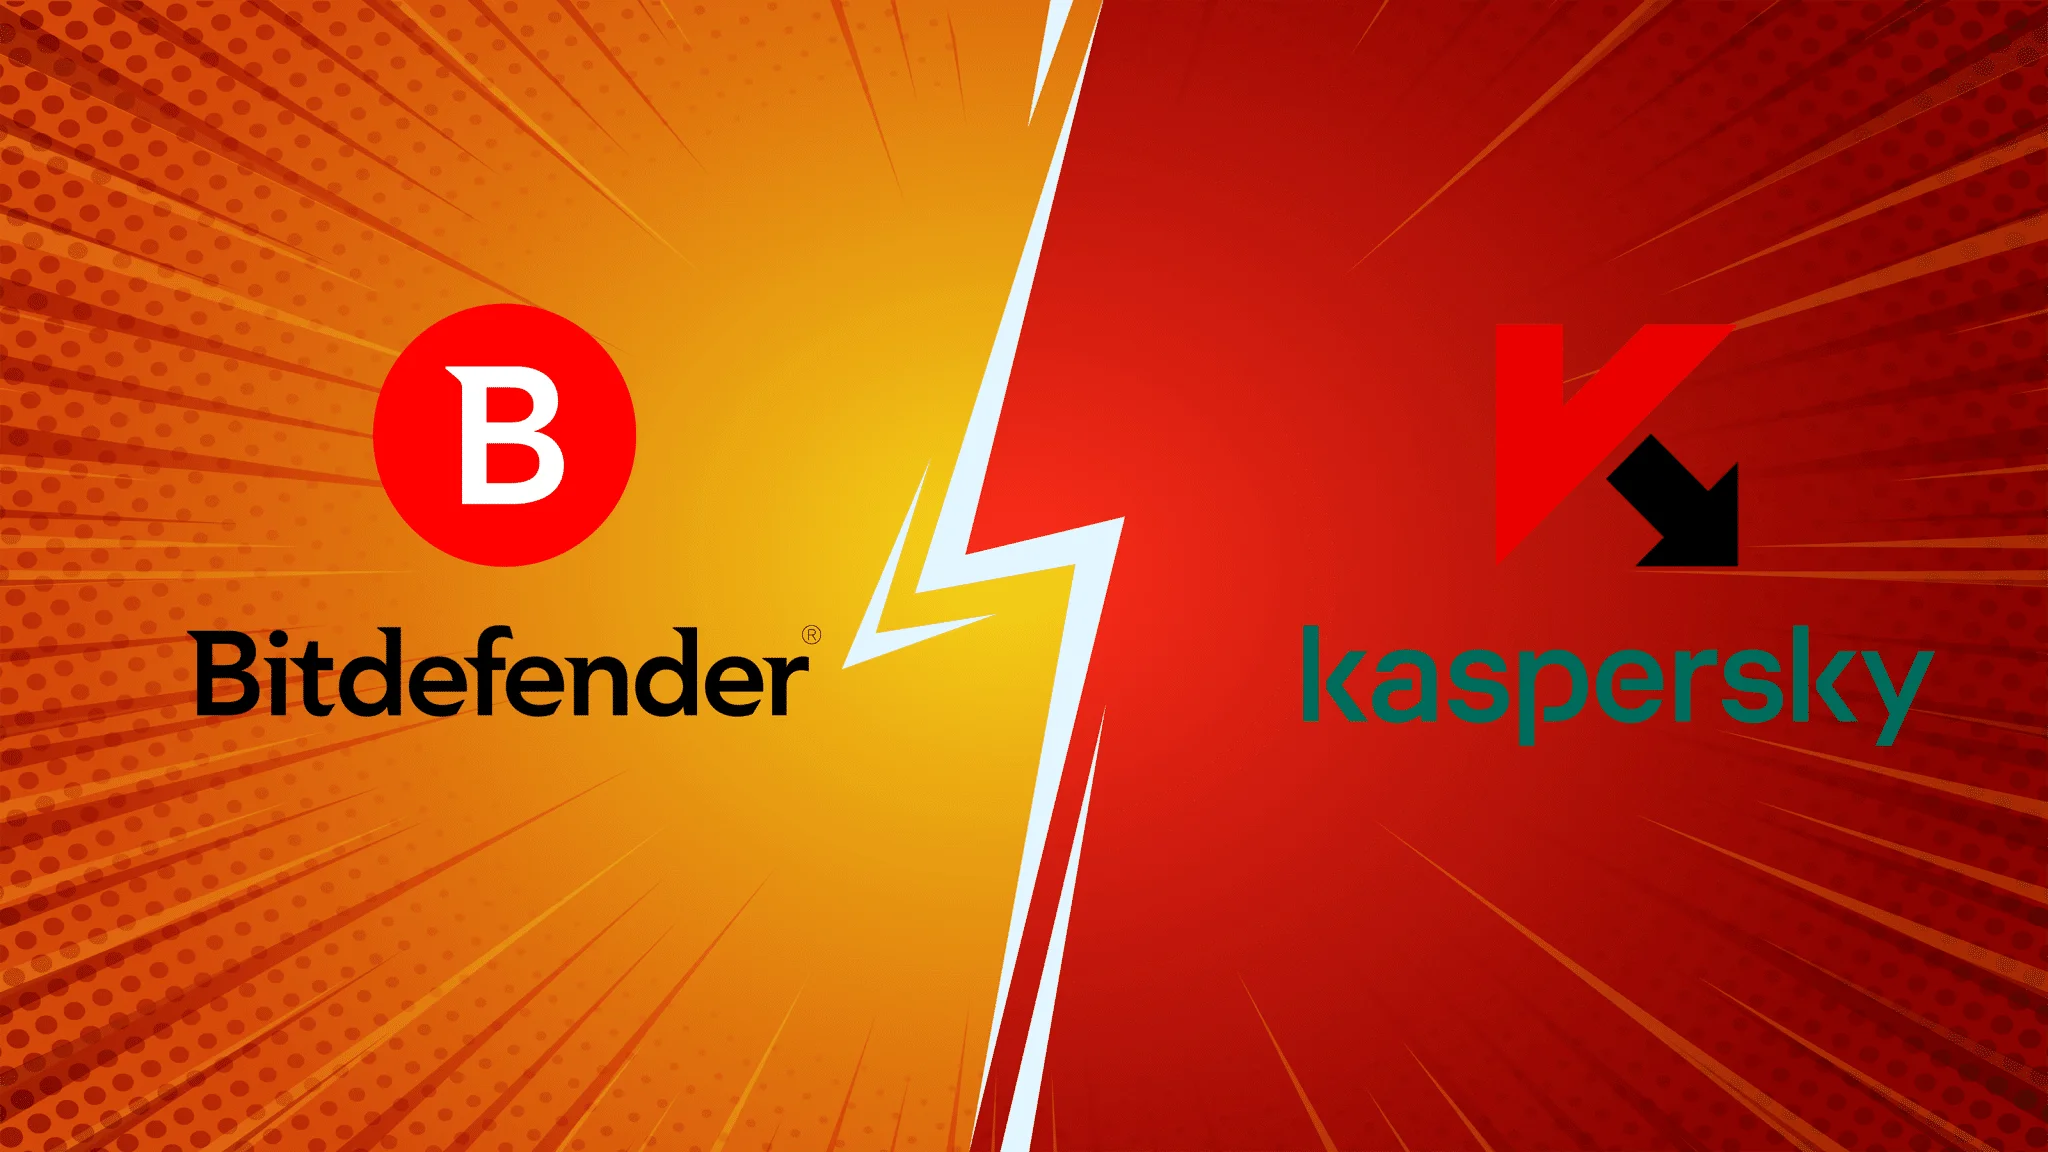 مقارنة بين Bitdefender و Kaspersky هي واحدة كلاسيكية ، حيث يحاول اسمان كبيران لبرامج الأمان باستمرار التفوق على بعضهما البعض
